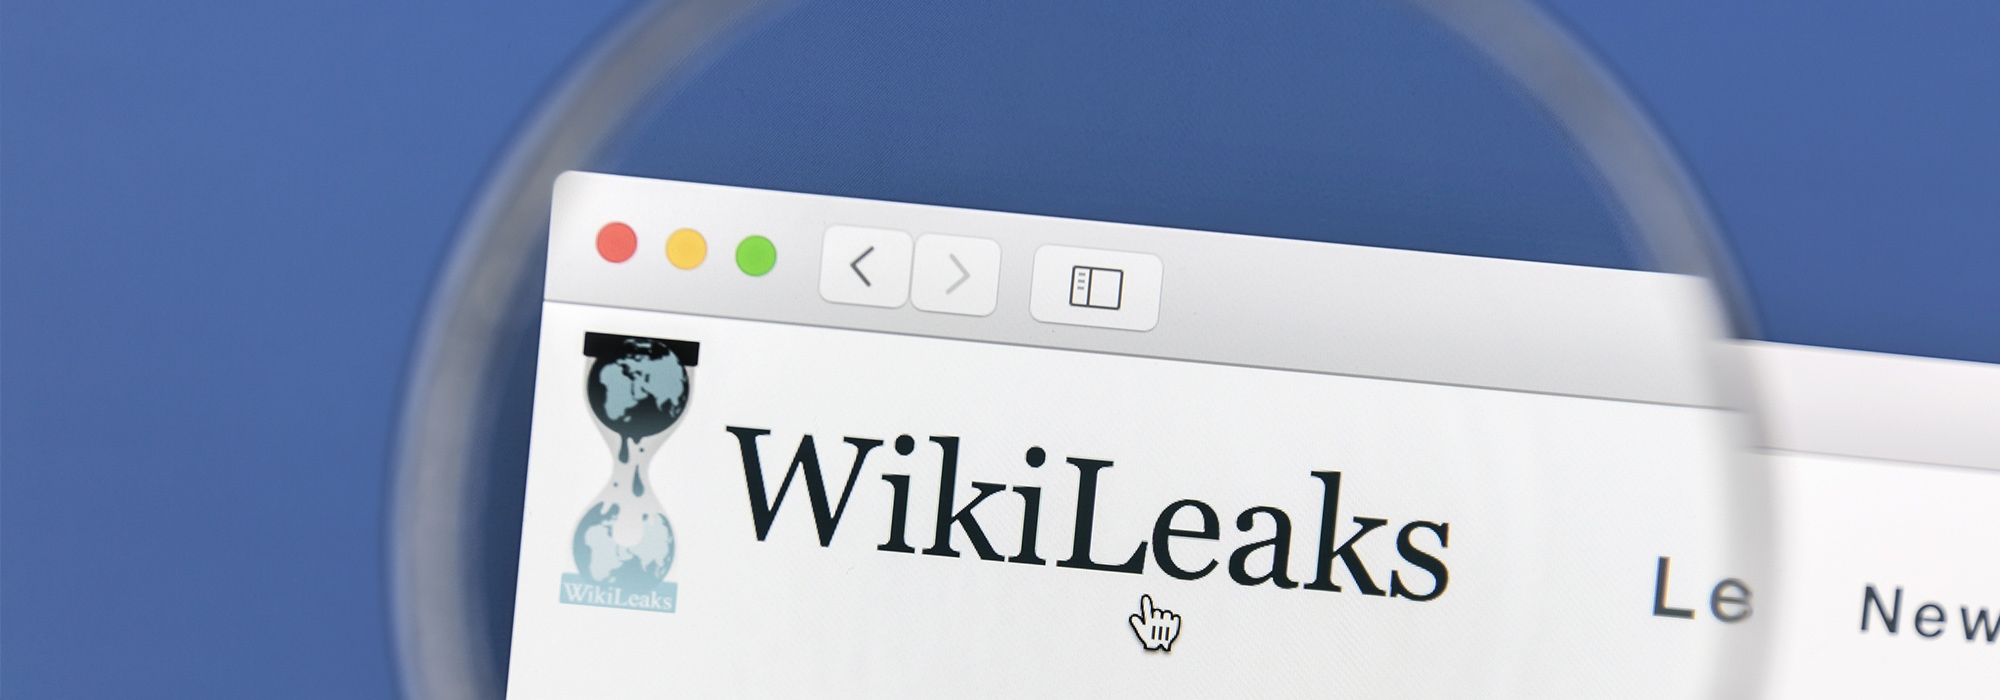 Sandhed og konsekvens: Wikileaks saga